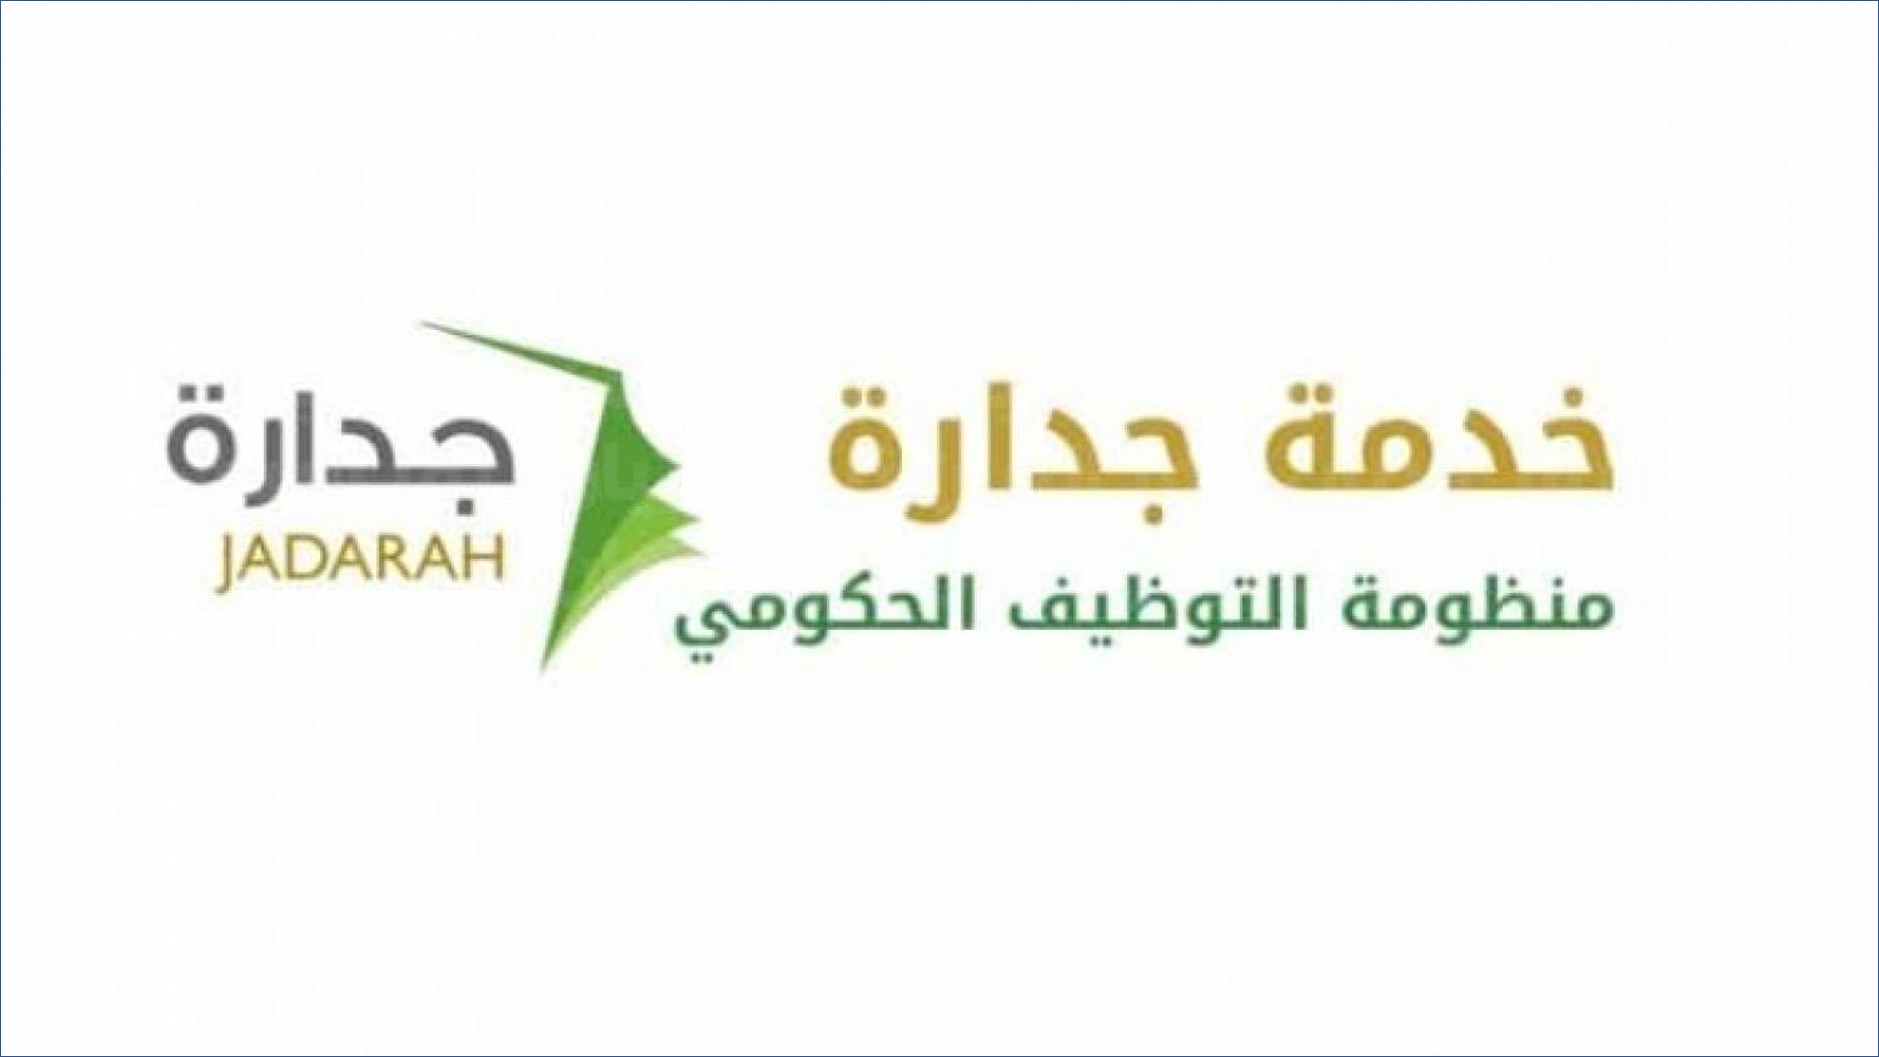 وظائف منصة جدارة في ٤٥ إدارة تعليمية بنظام التعاقد الرسمي في السعودية